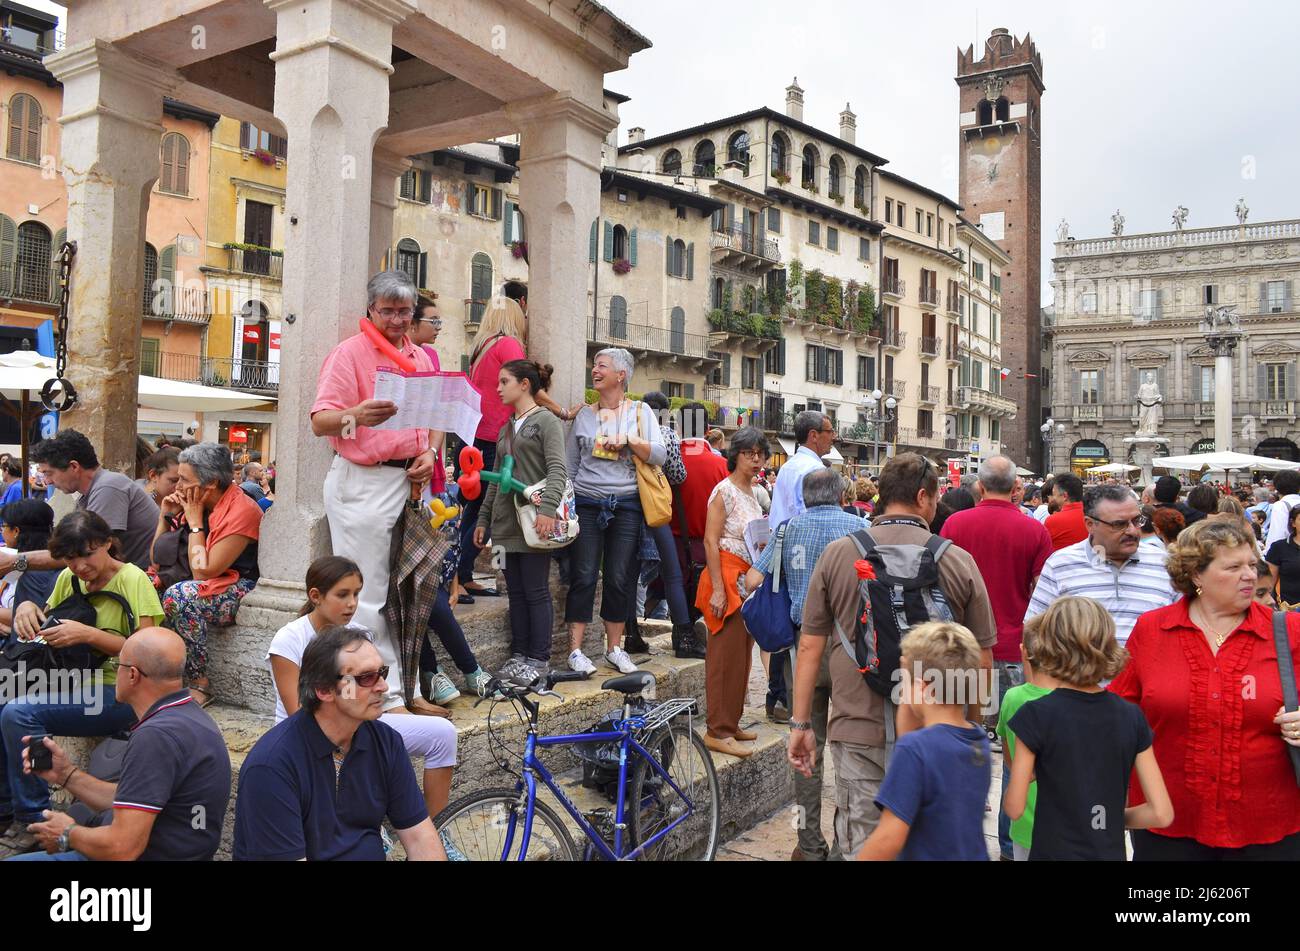 Tourists at Piazza delle Erbe square in Verona Italy. Stock Photo